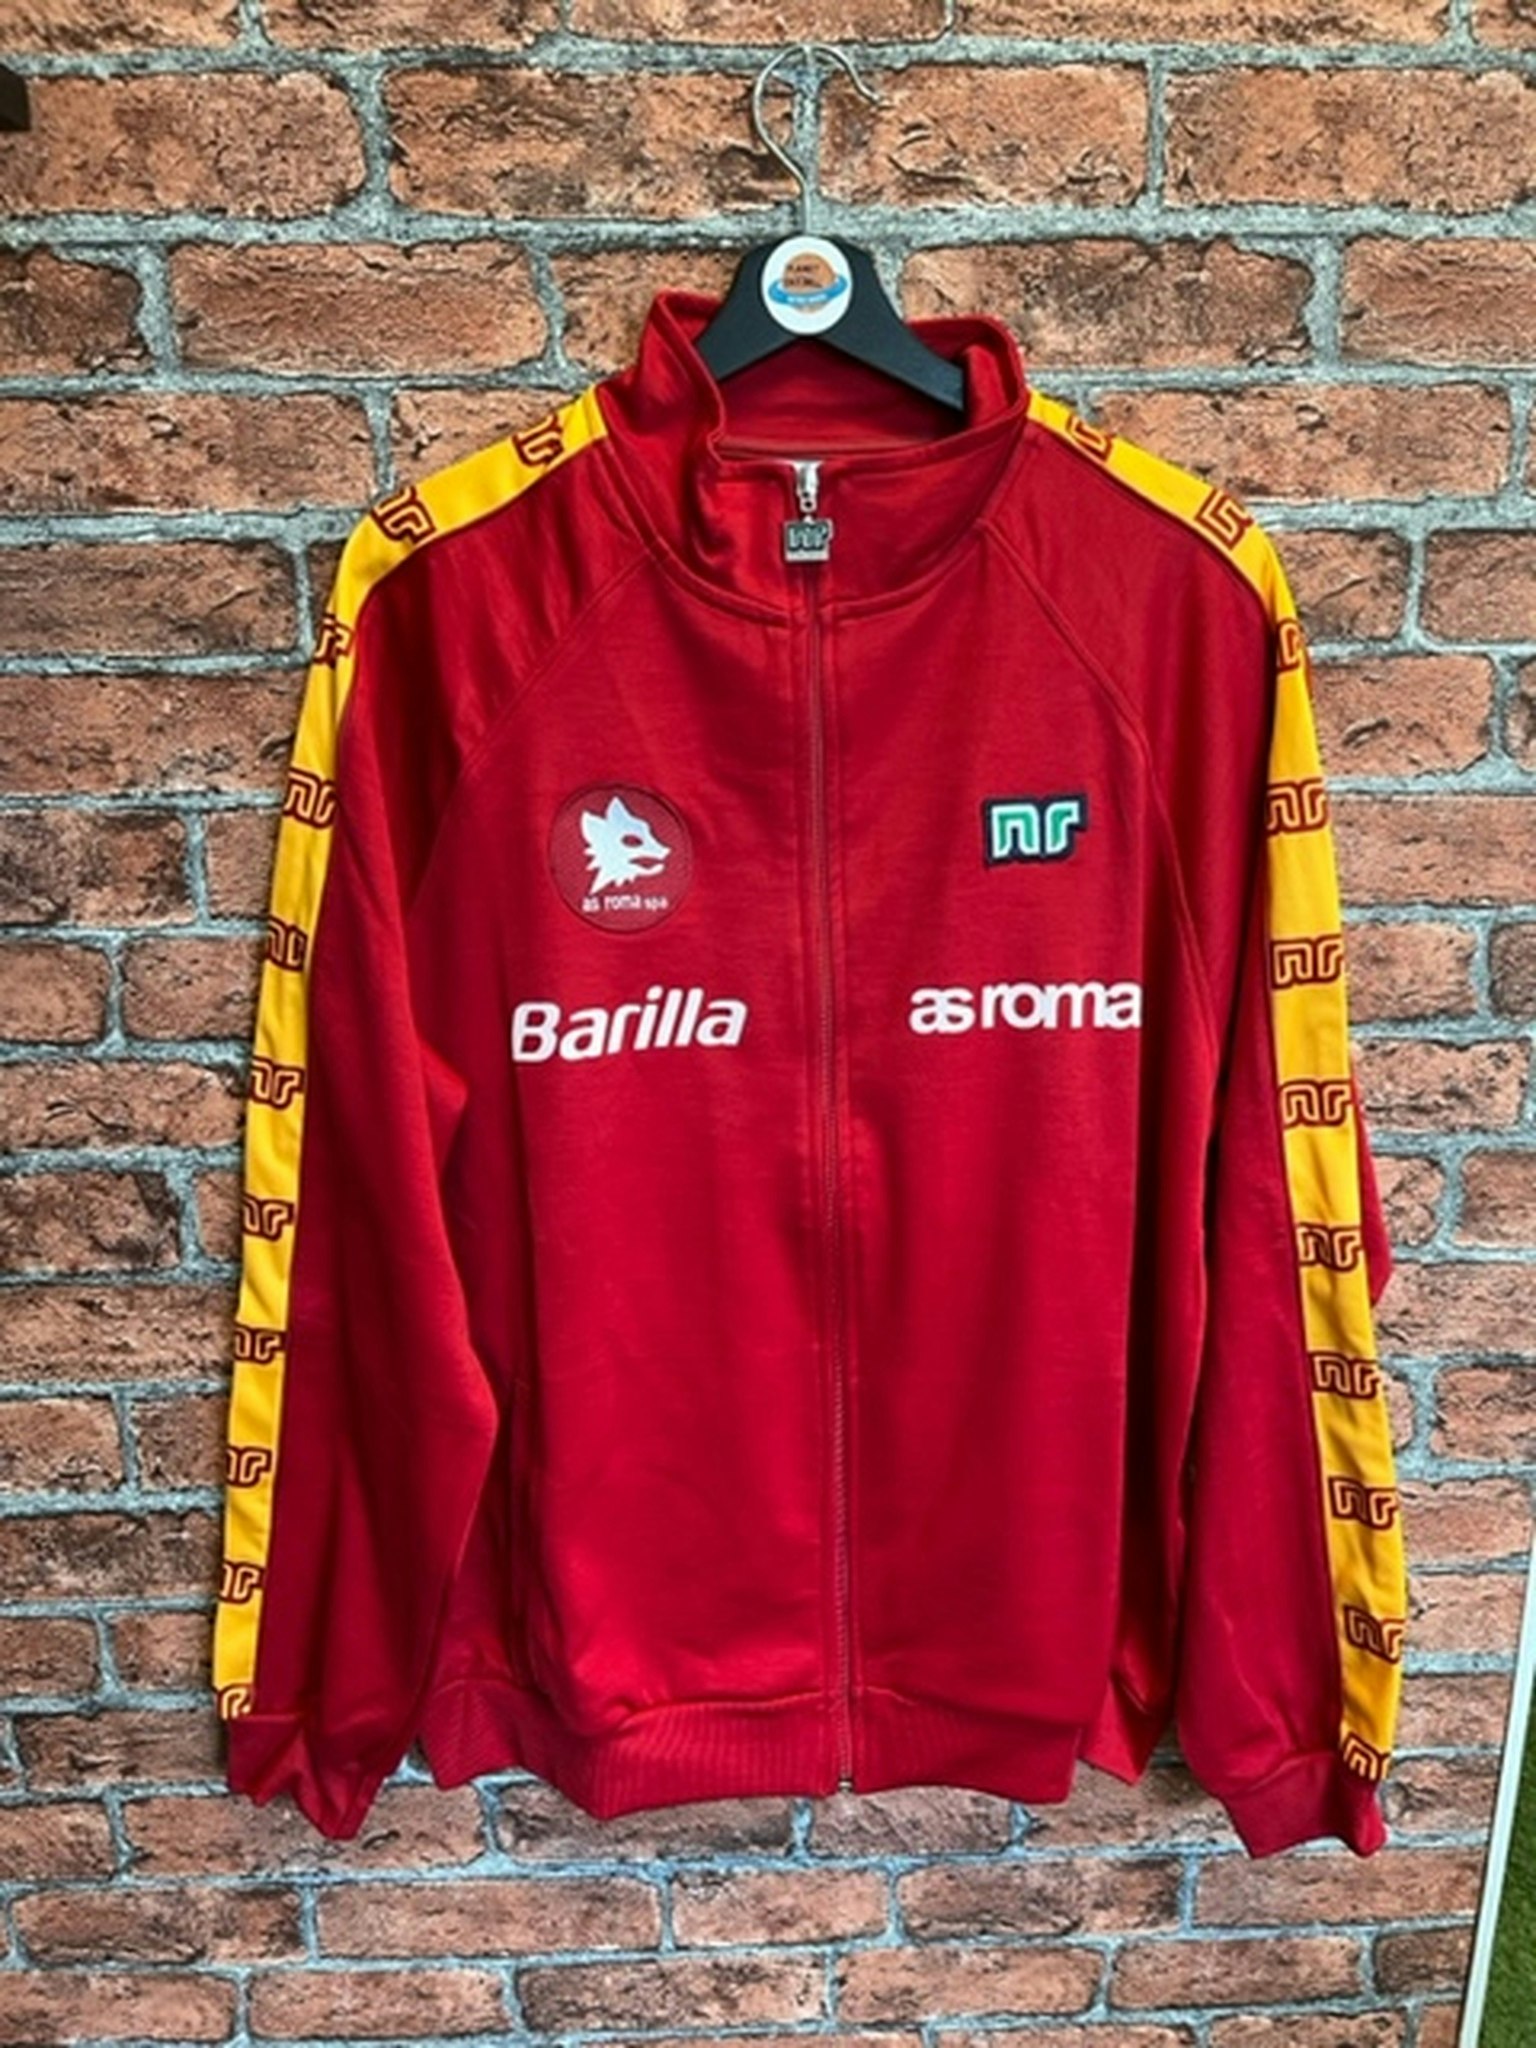 AS Roma jacket